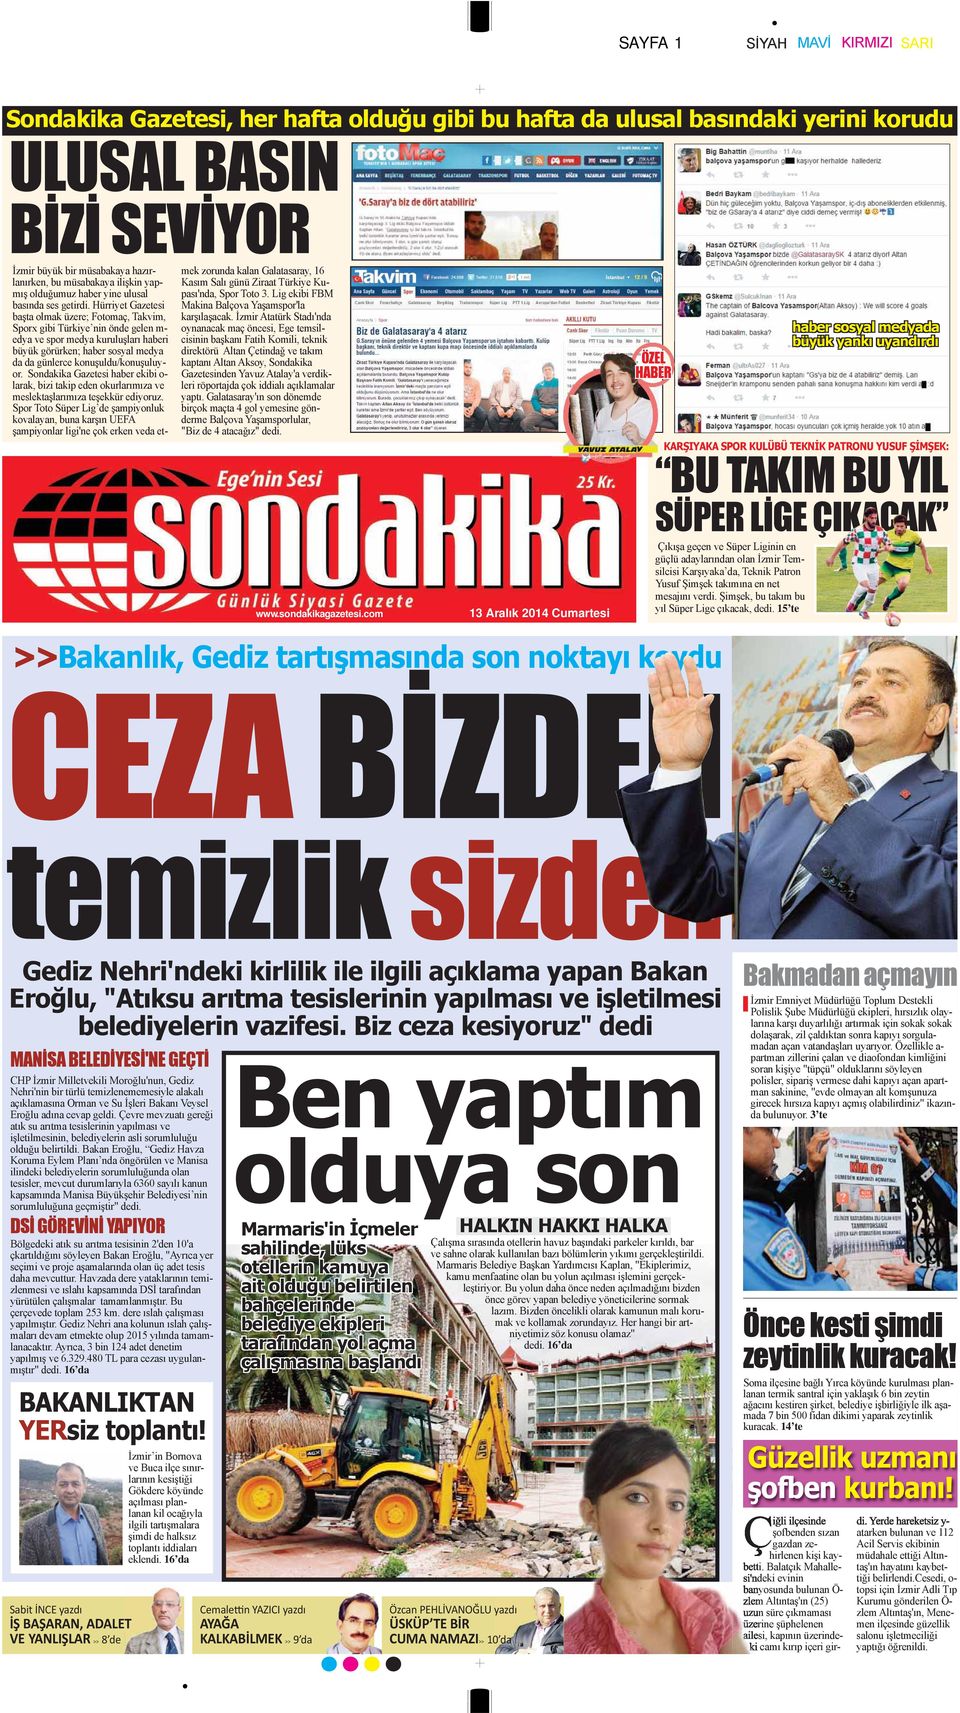 Hürriyet Gazetesi başta olmak üzere; Fotomaç, Takvim, Sporx gibi Türkiye nin önde gelen m- edya ve spor medya kuruluşları haberi büyük görürken; haber sosyal medya da da günlerce